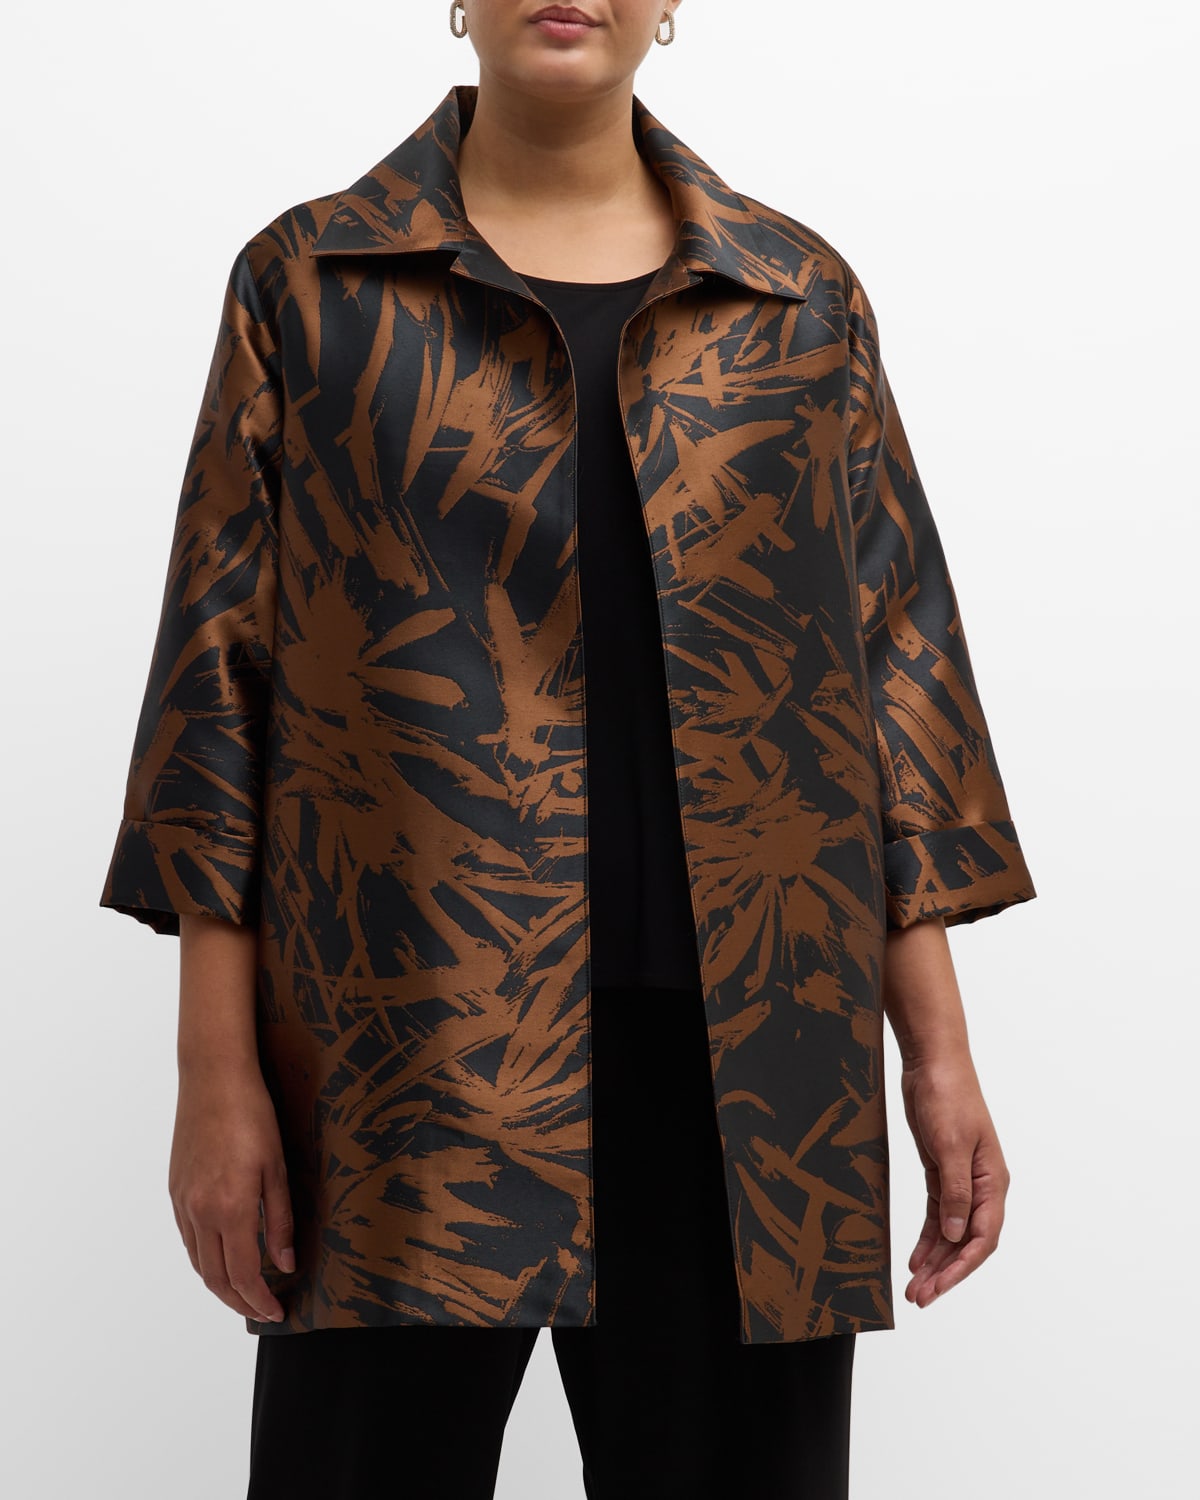 Caroline Rose Plus Plus Size Autumn Accents Jacquard Party Jacket